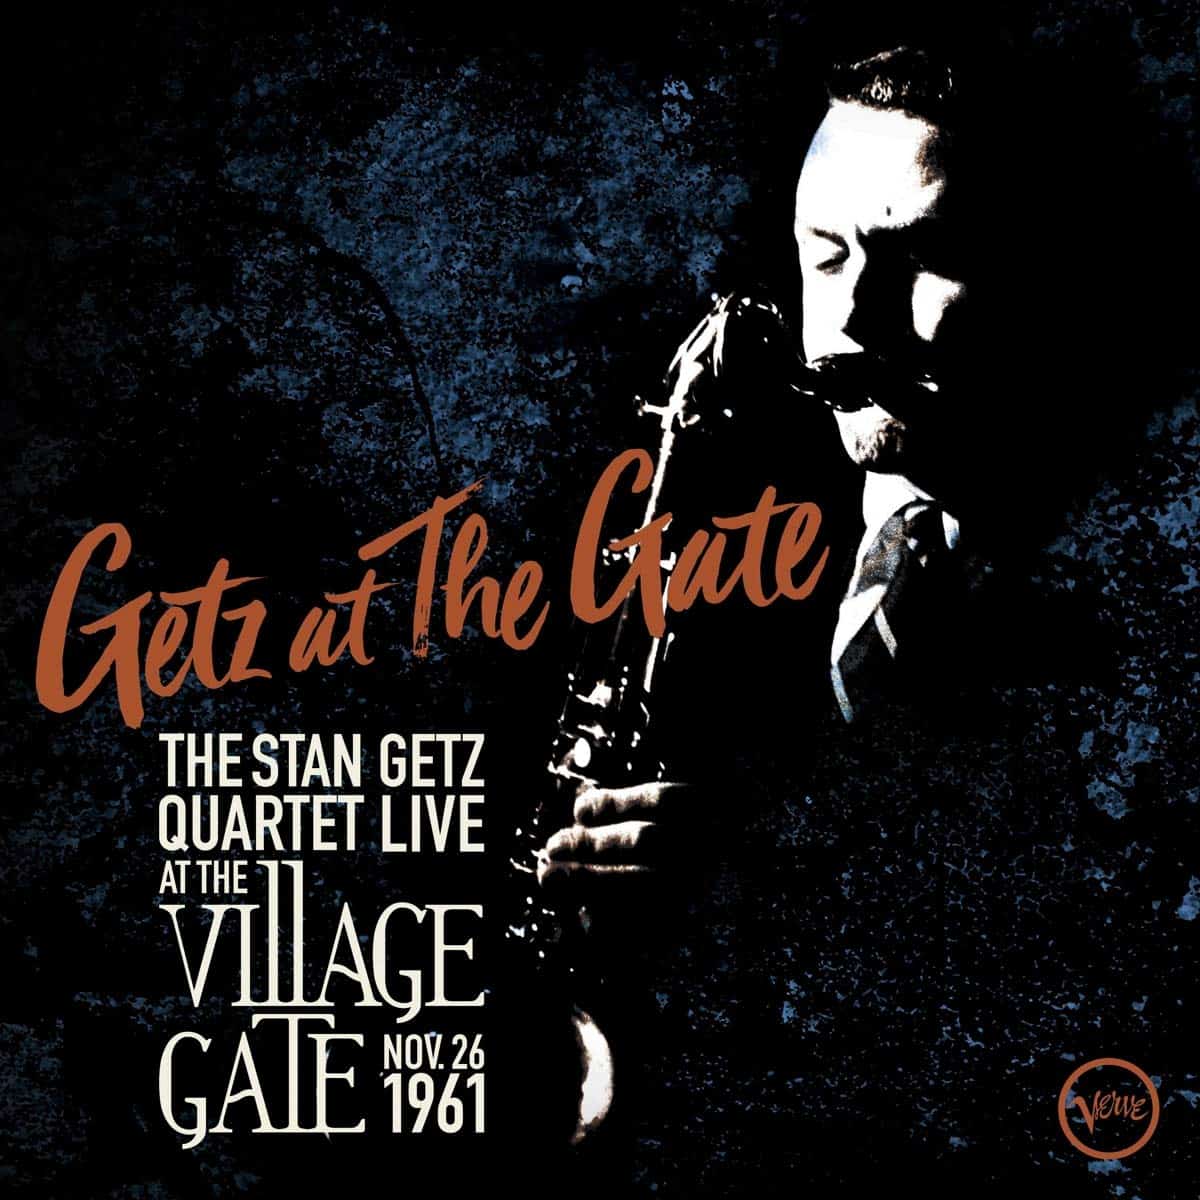 Stan-Getz-Getz-At-the-Gate-vinyl-LP-record-album-front